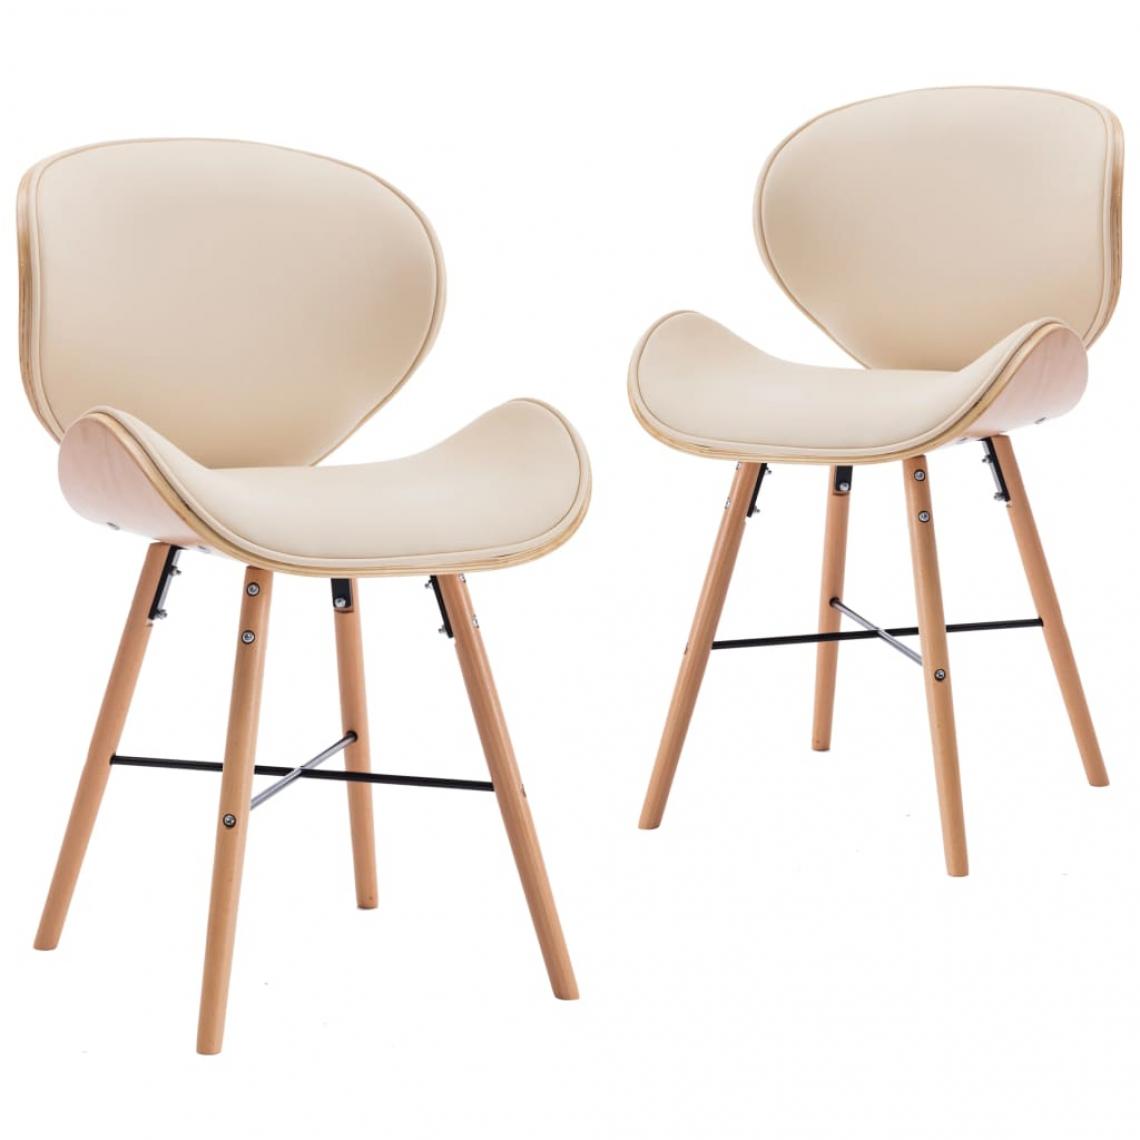 Decoshop26 - Lot de 2 chaises de salle à manger cuisine design moderne similicuir crème et bois courbé CDS020428 - Chaises